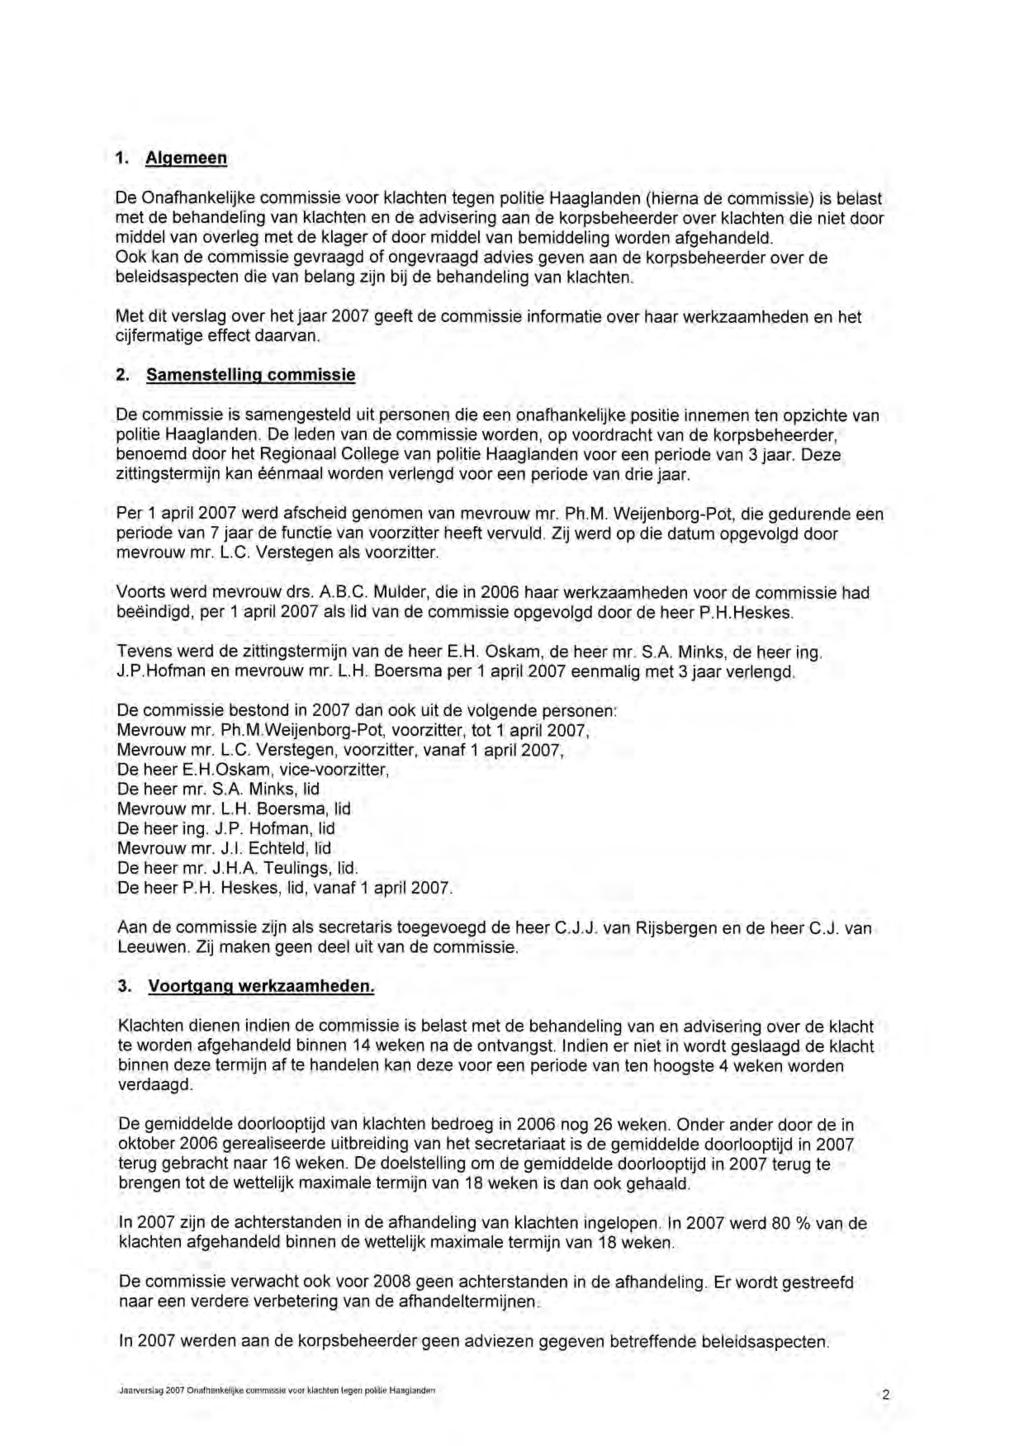 1. Algemeen De Onafhankelijke commissie voor klachten tegen politie Haaglanden (hierna de commissie) is belast met de behandeling van klachten en de advisering aan de korpsbeheerder over klachten die